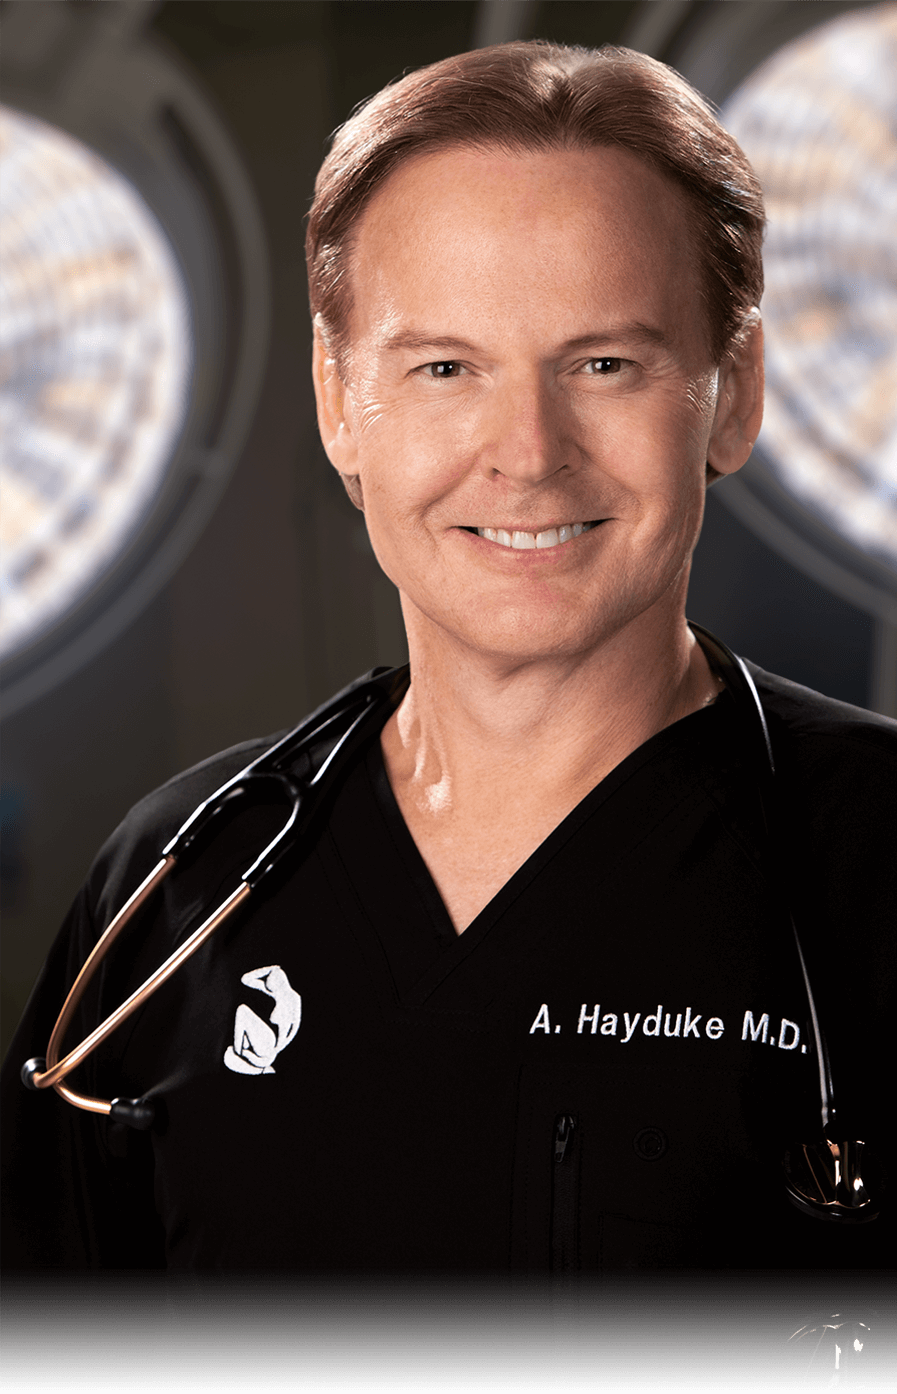 DR ANDREW J. HAYDUKE